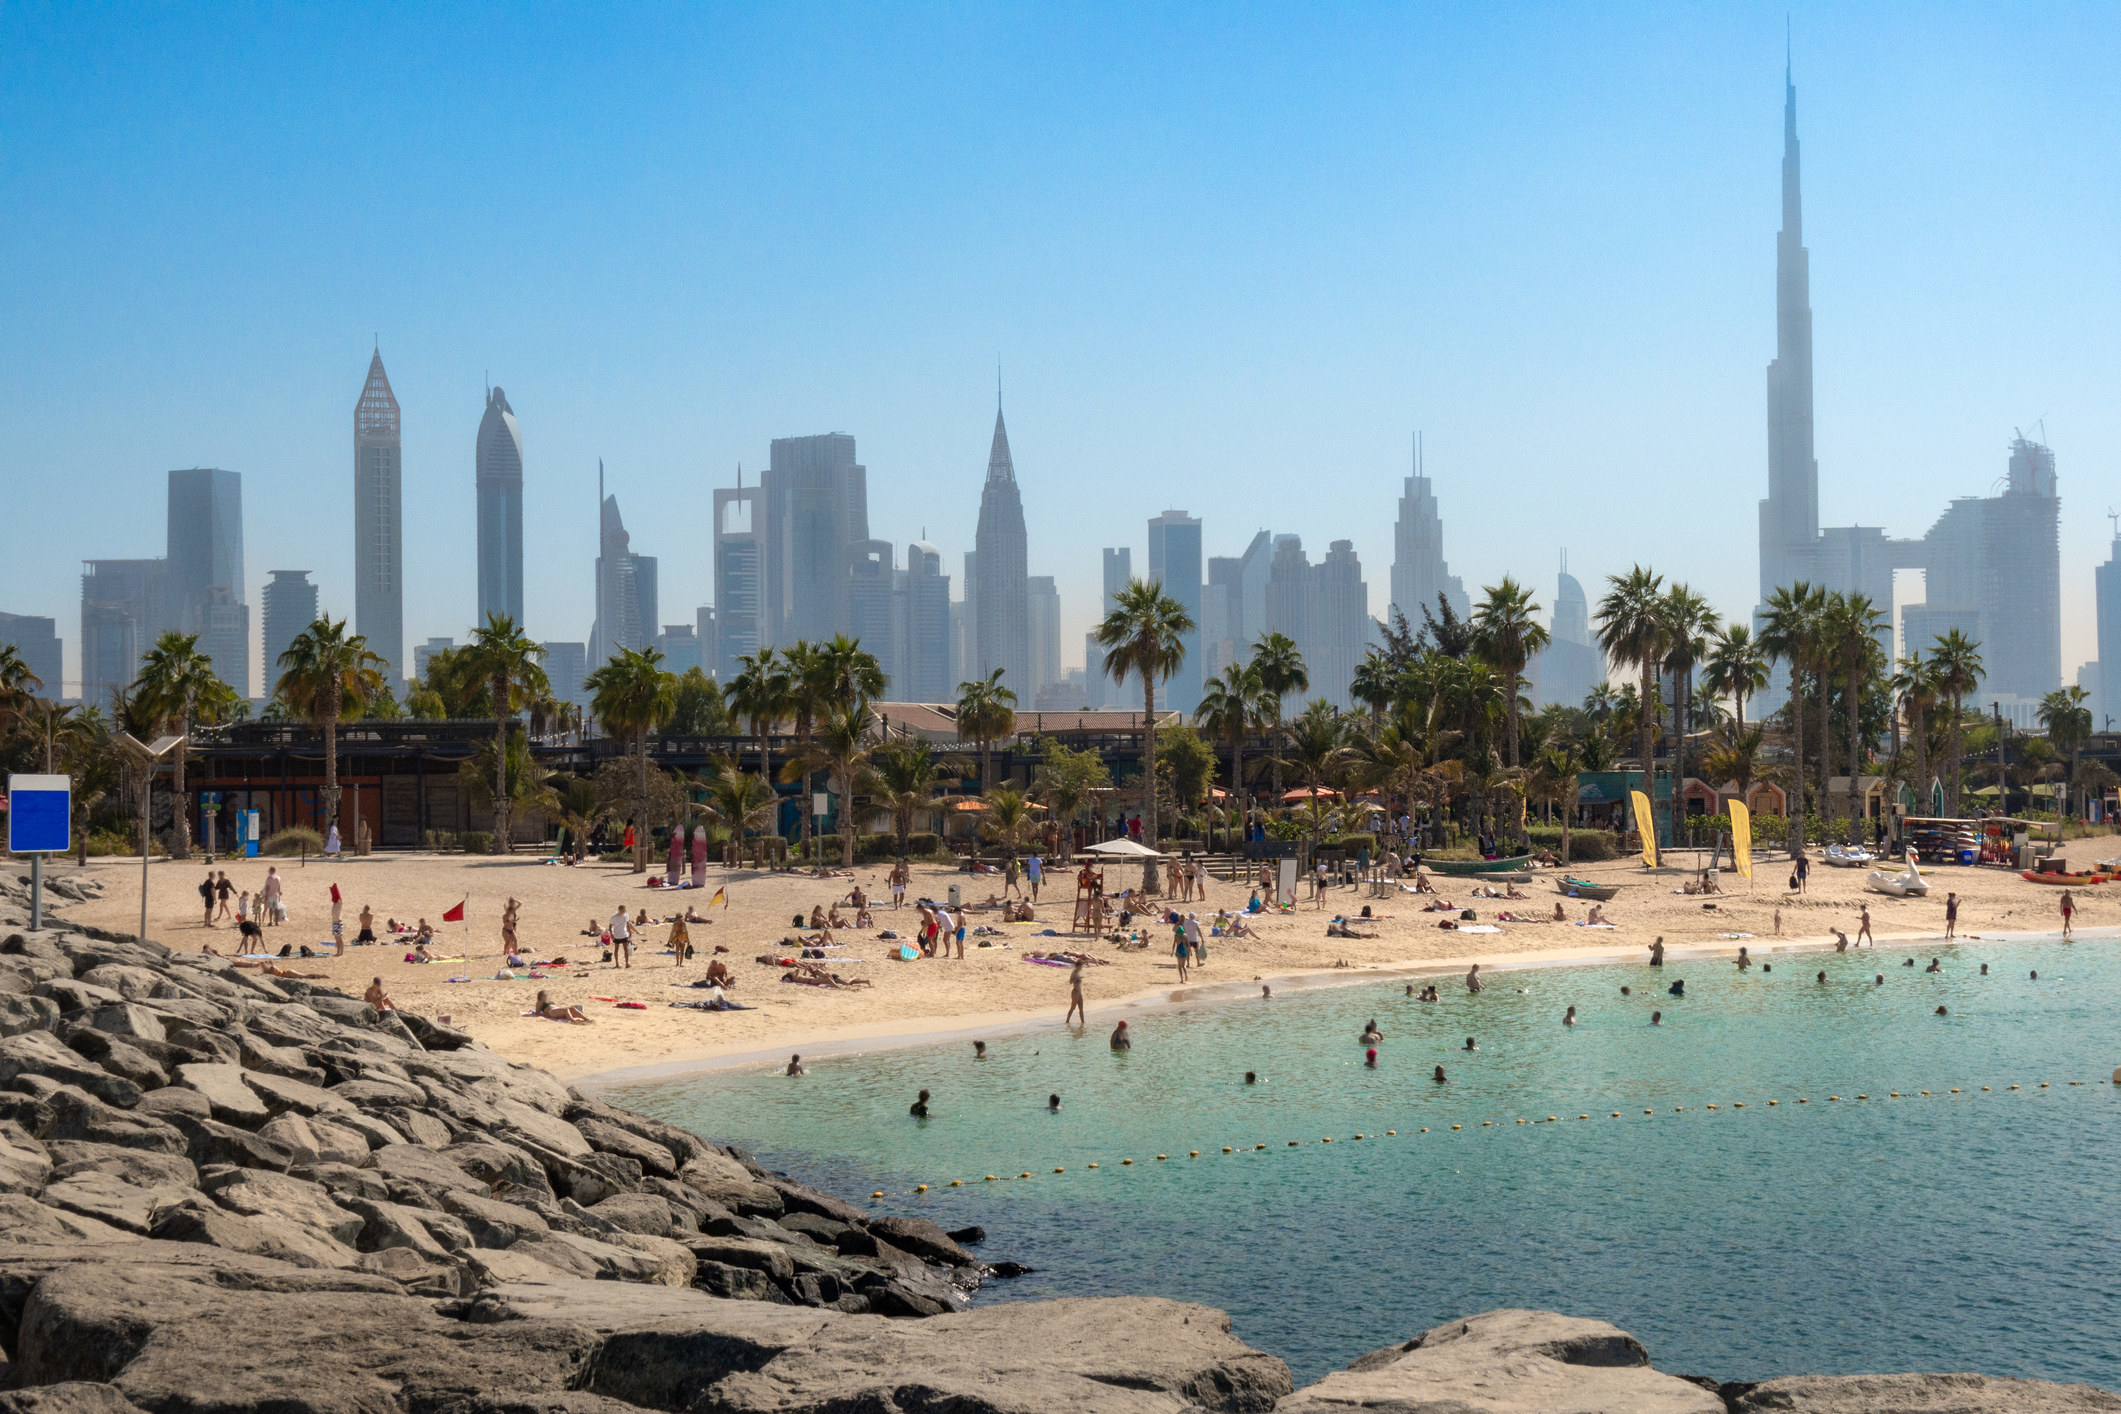 A beach and the Dubai skyline